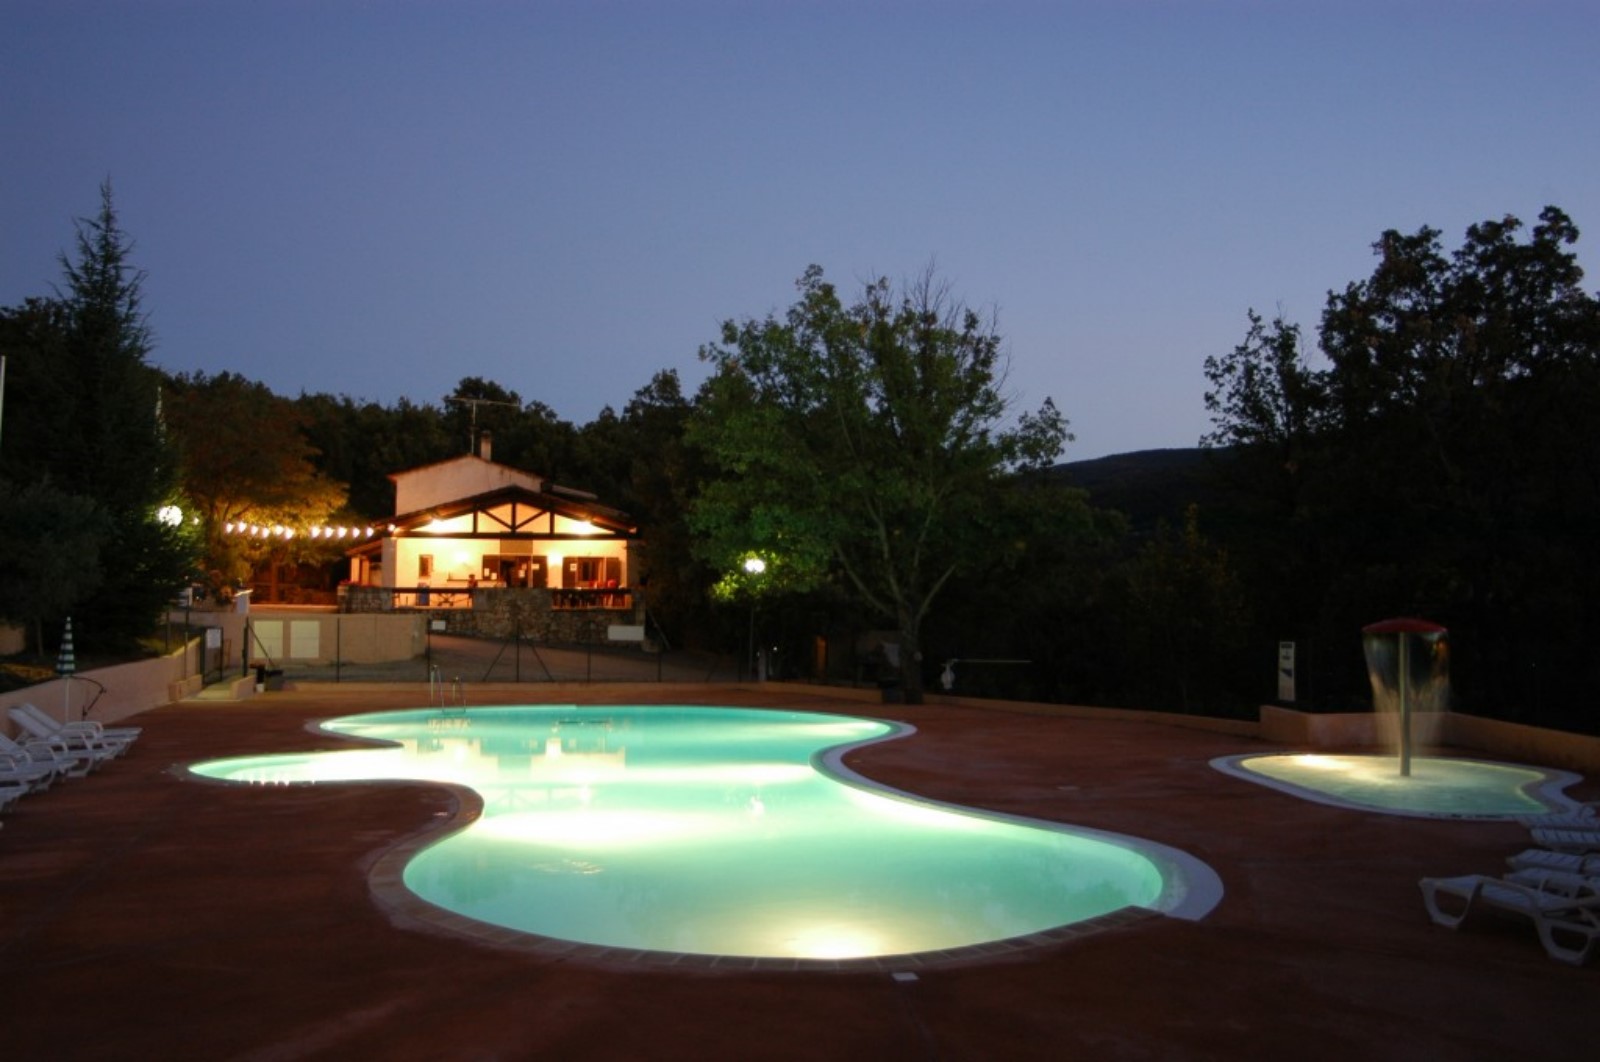 La piscine by night - Le Clos de Barbey